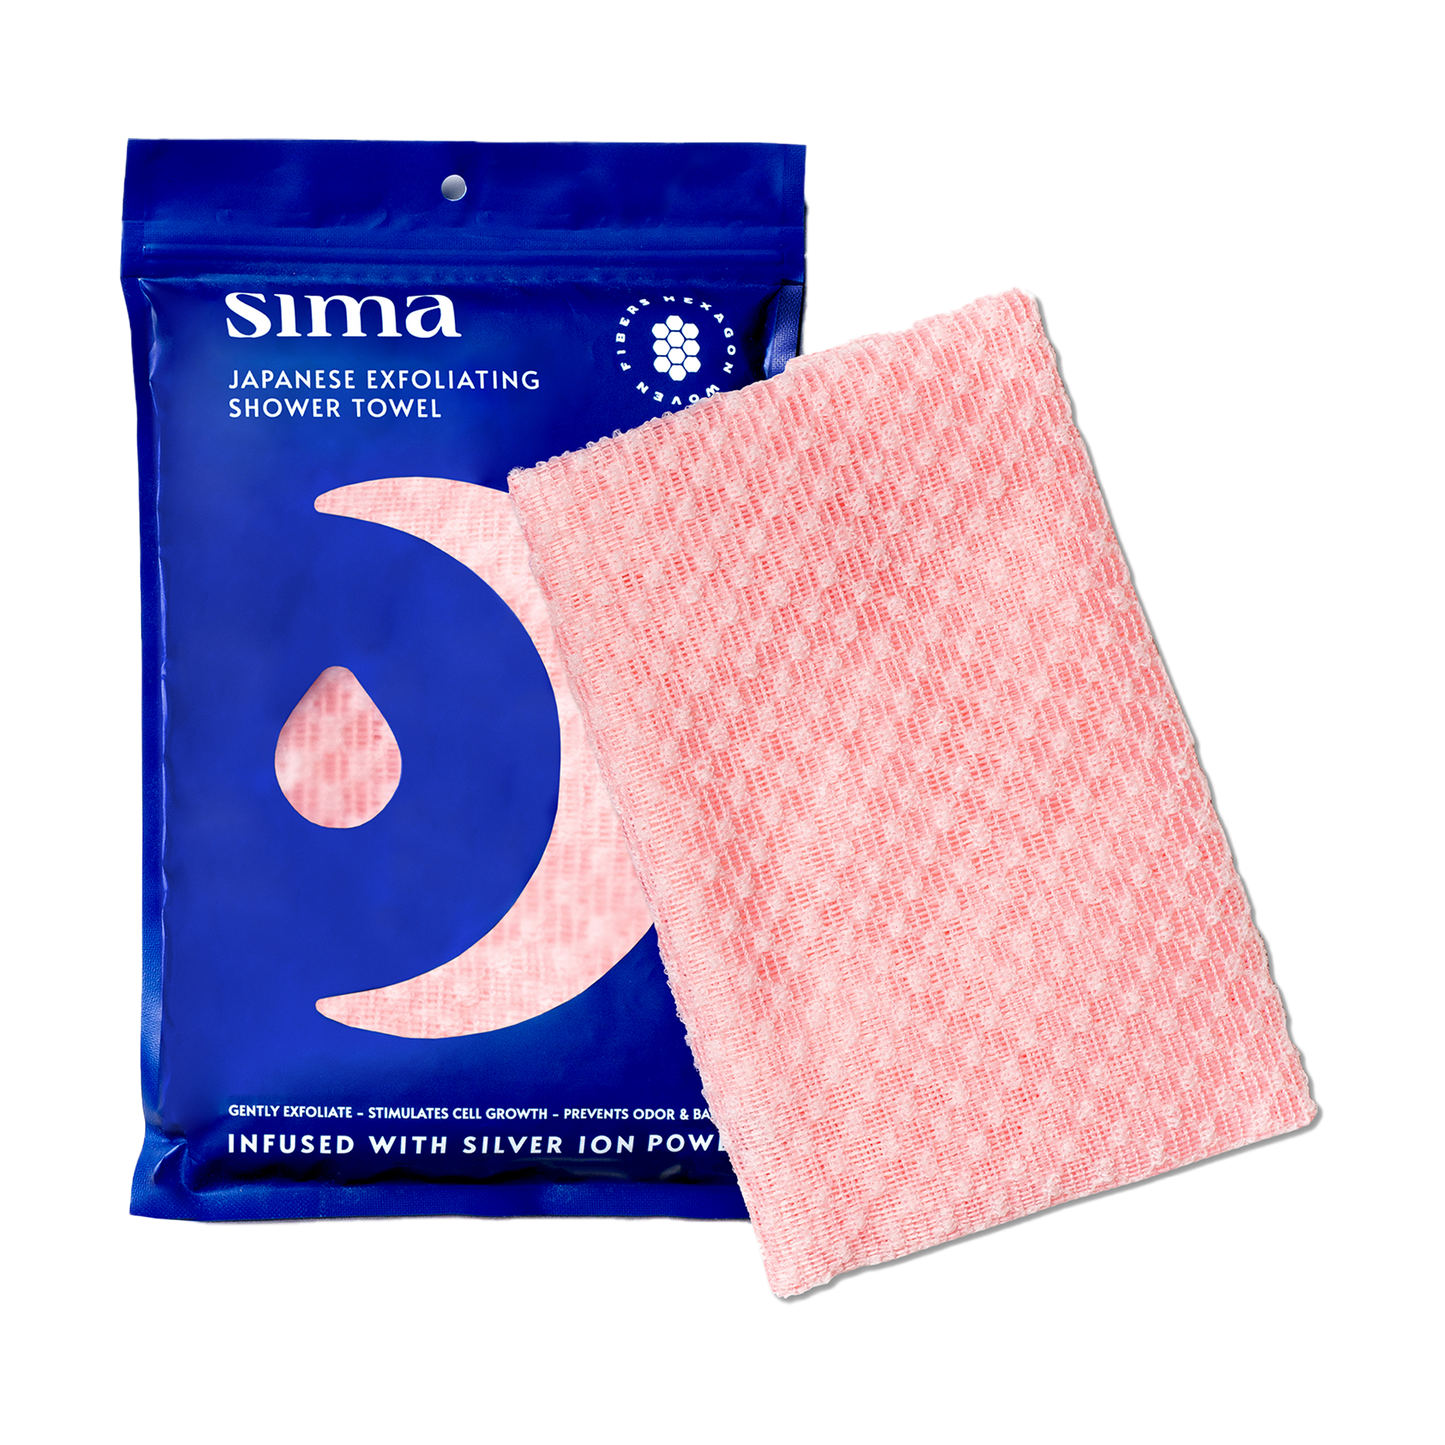 Sima Japanese Exfoliating Shower Towel